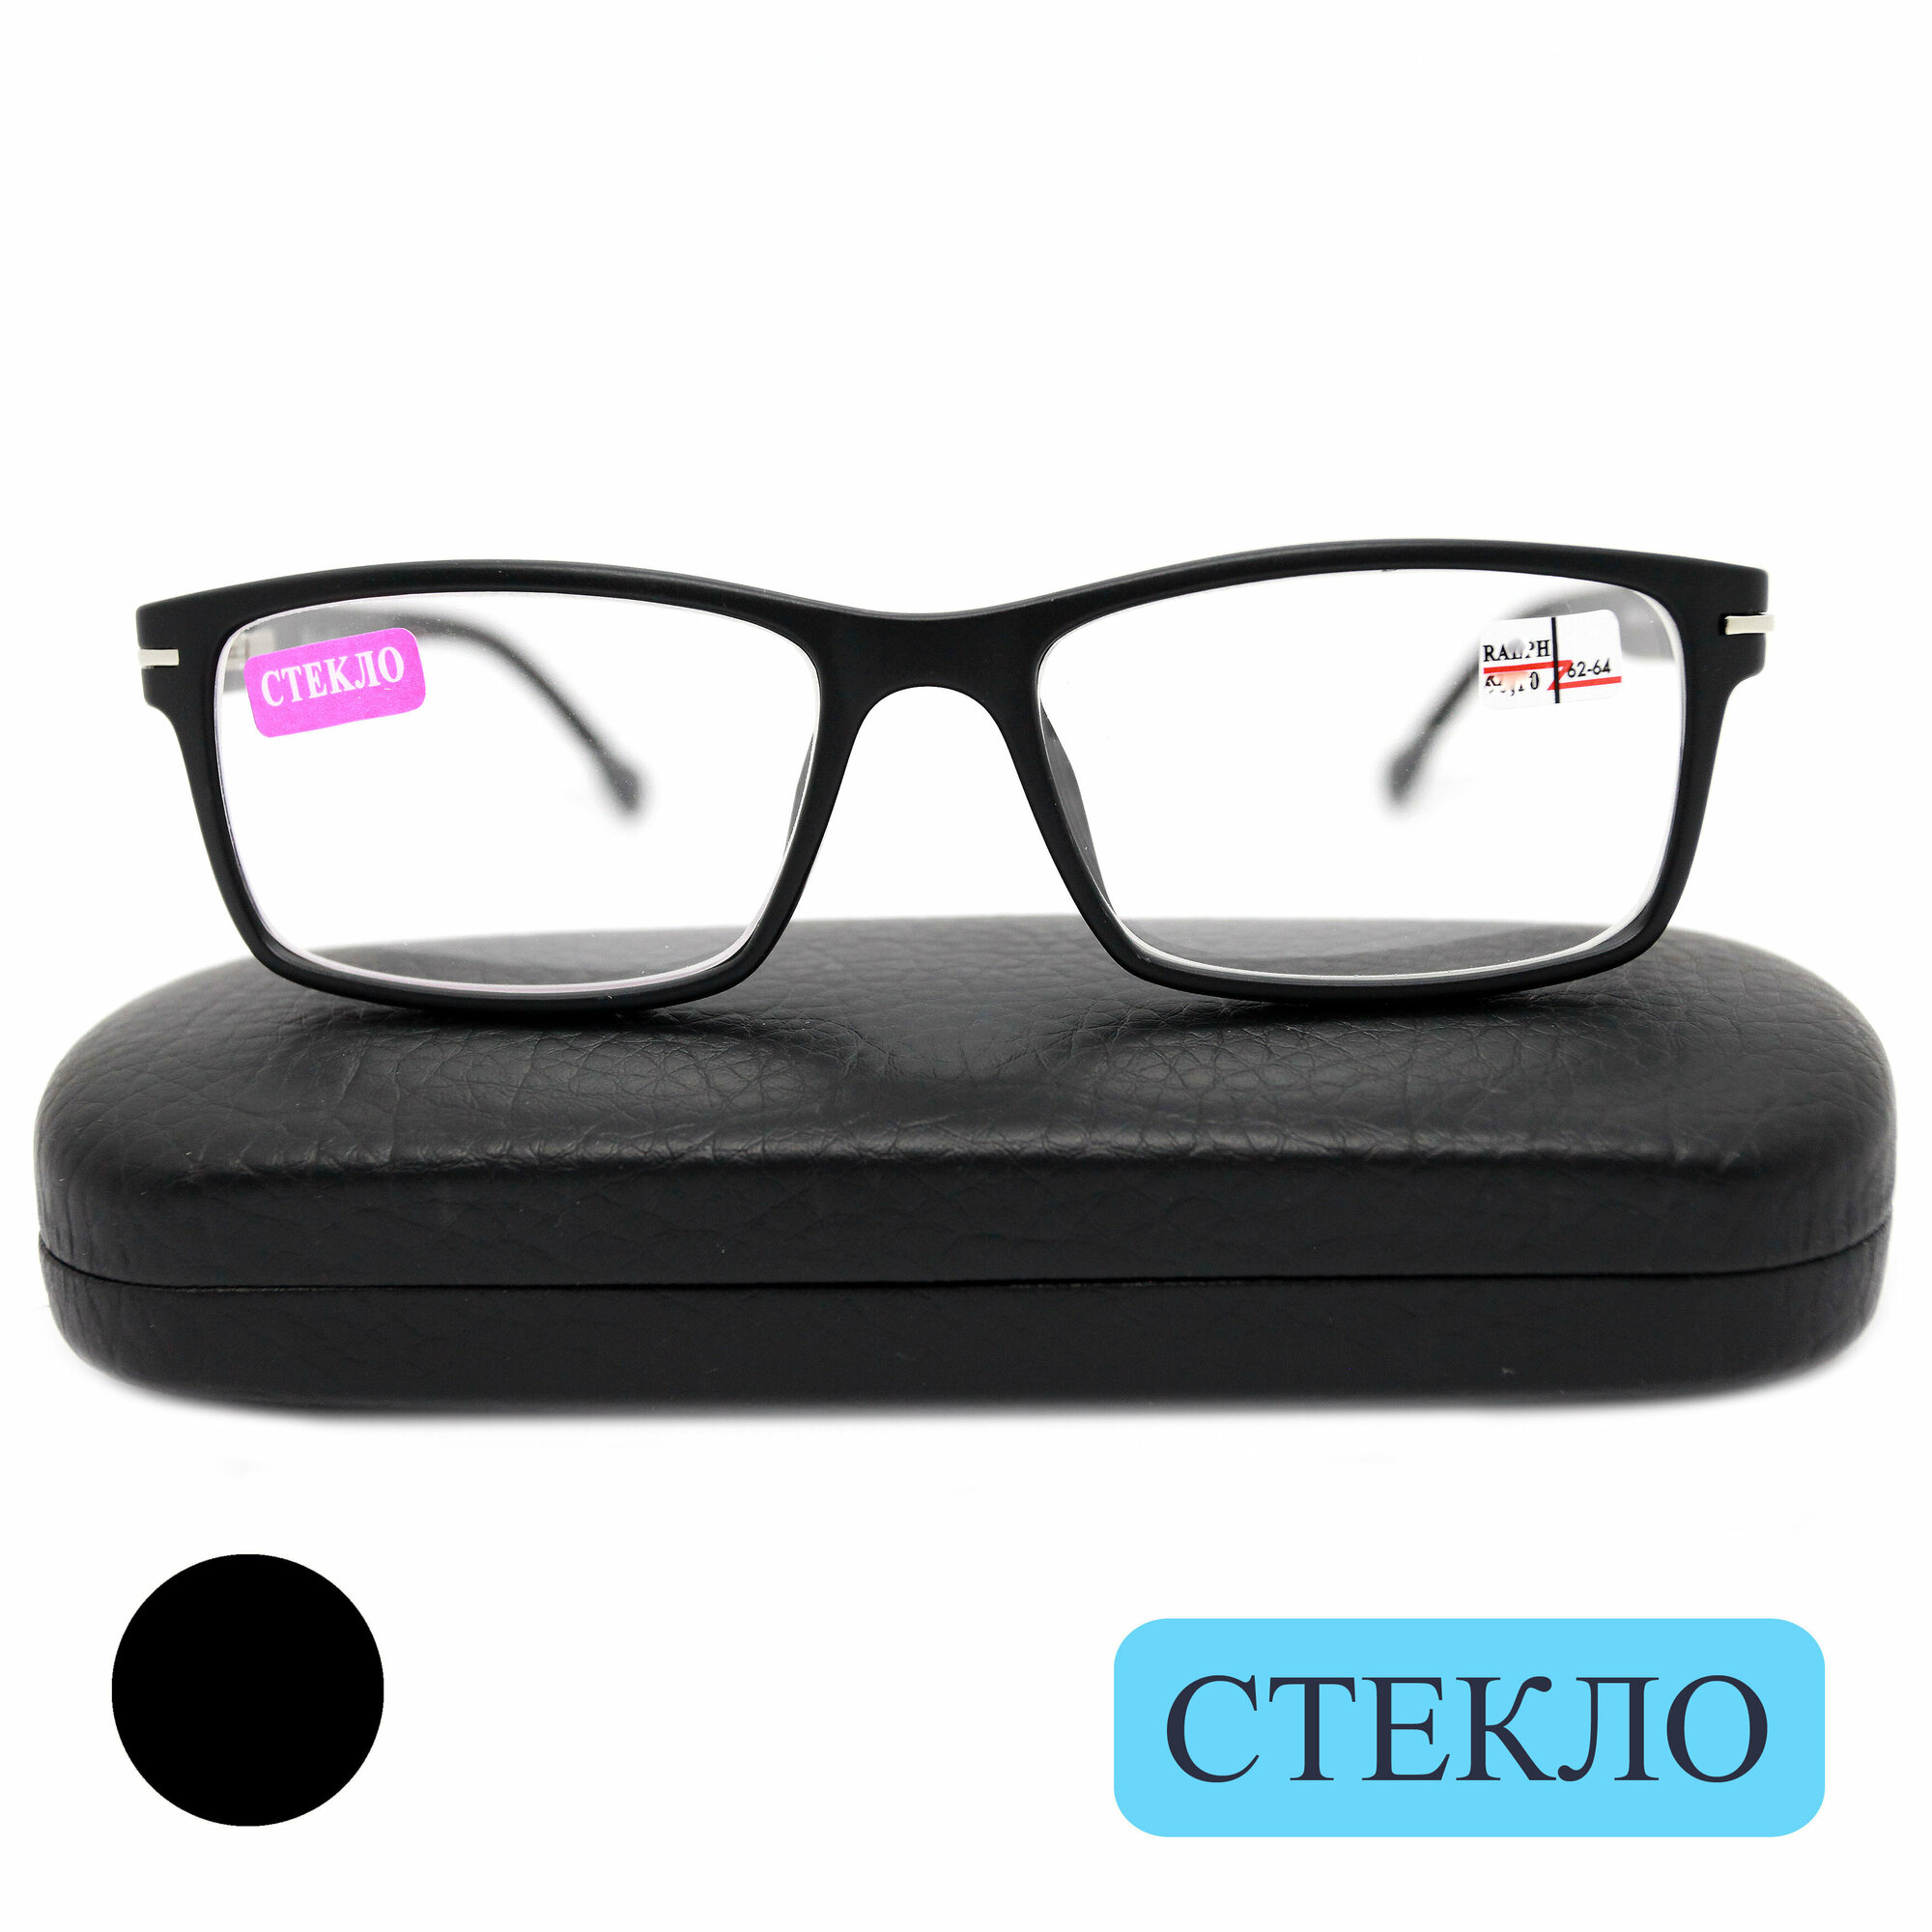 Готовые очки со стеклом (+2.25) с футляром, RALPH 0468 C1, линза стекло, цвет черный, РЦ 62-64